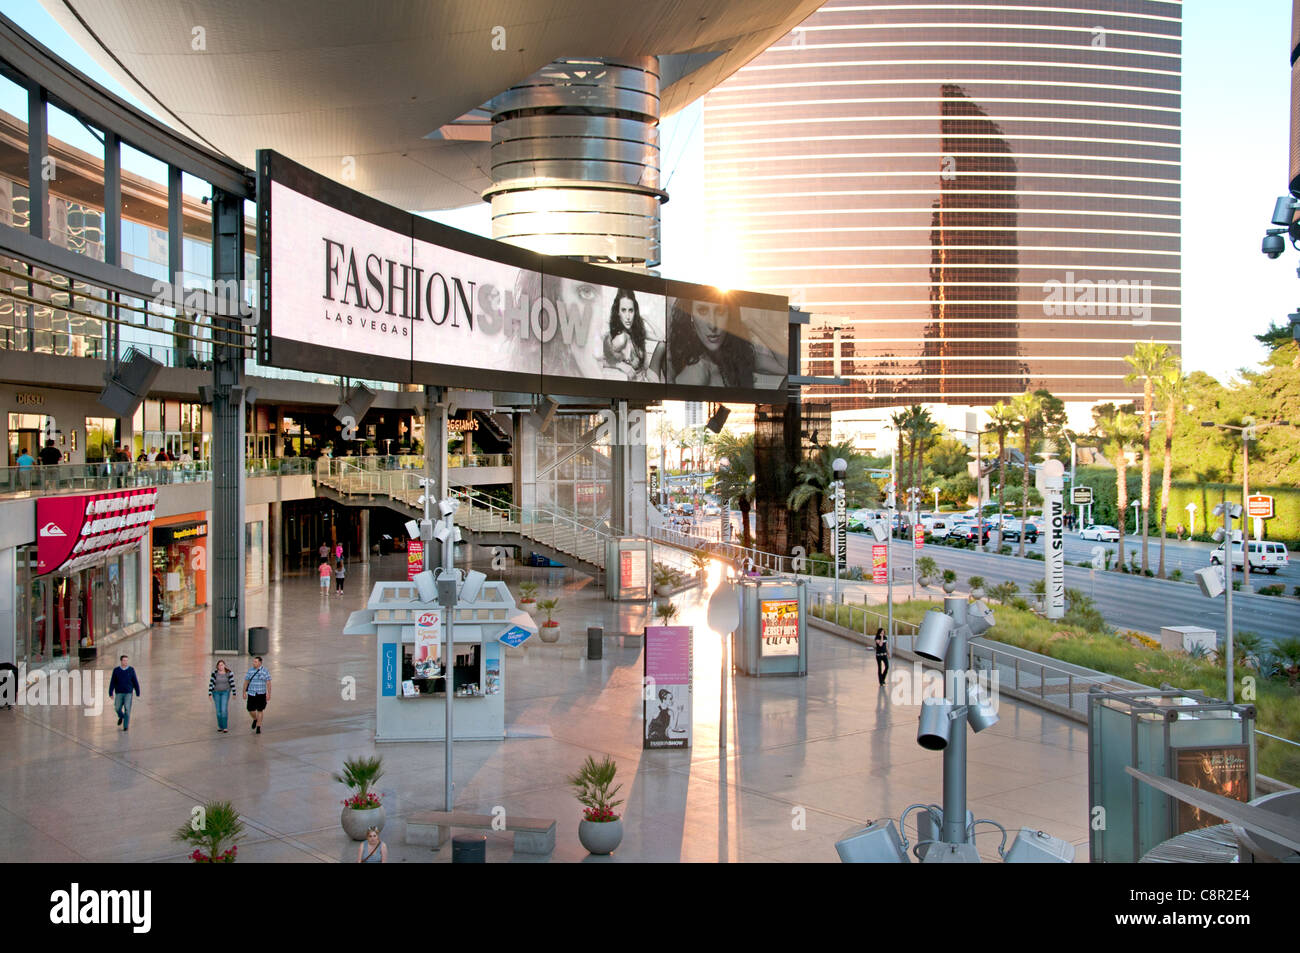 fashion show mall las vegas